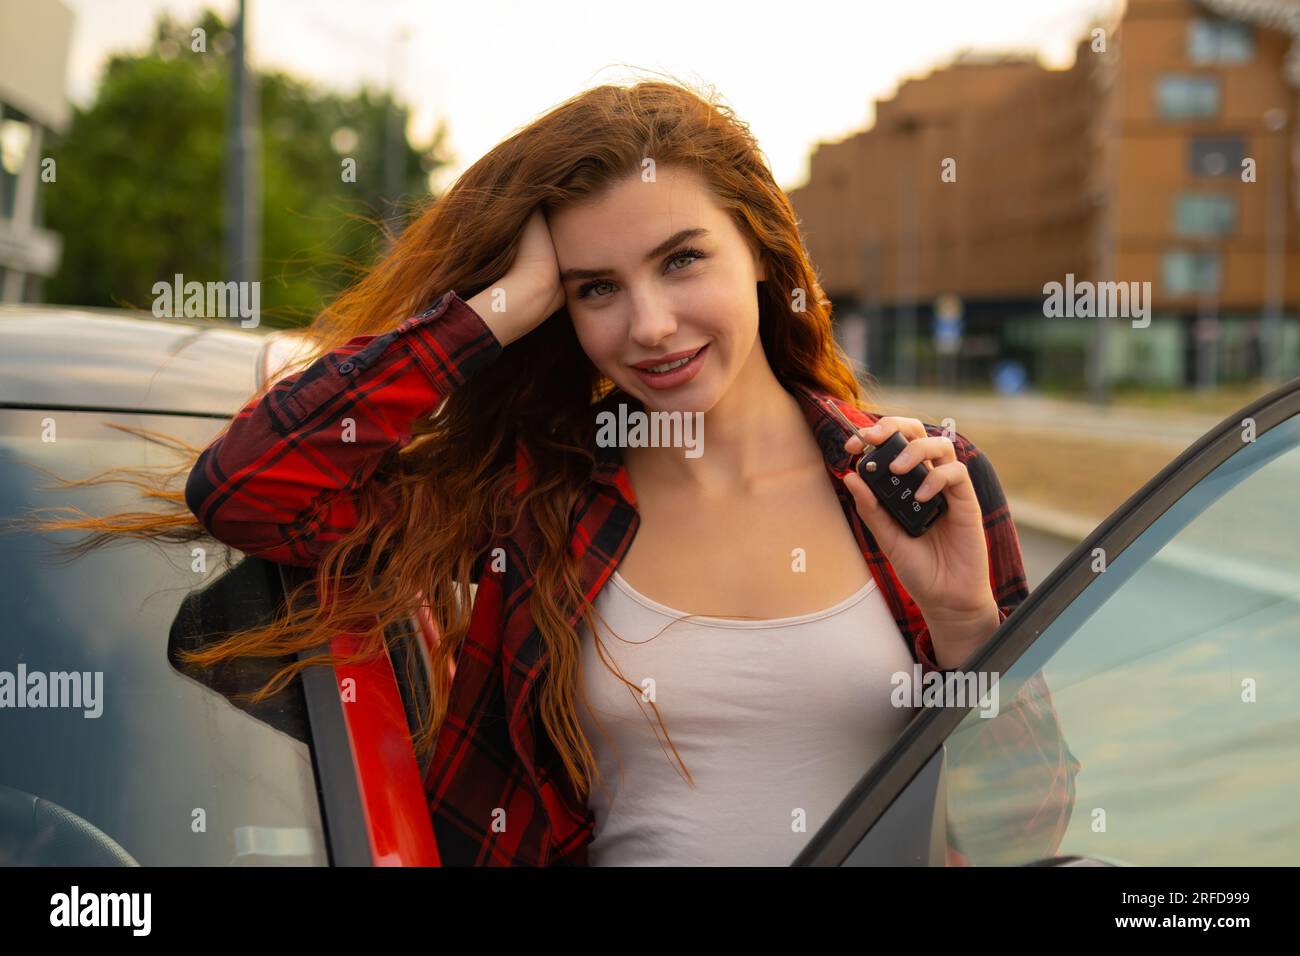 Con lucchetti rossi infuocati e un sorriso sorridente, la giovane donna che indossa una camicia a quadri casual posa accanto all'auto rossa e tiene le chiavi dell'auto in mano. Foto Stock